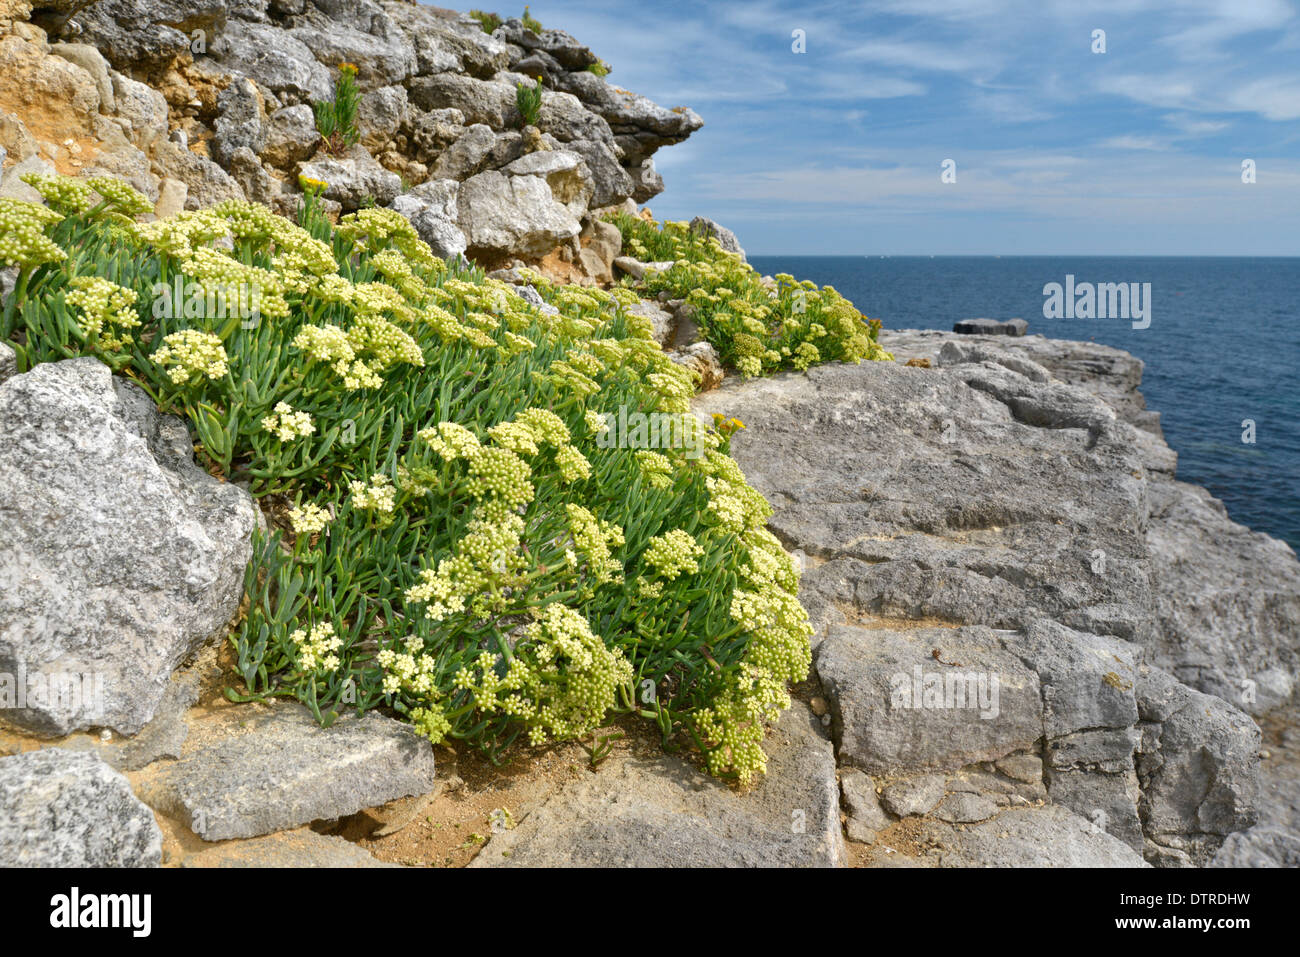 ROCK-SAMPHIRE Crithmum maritimum (Apiaceae) Stock Photo